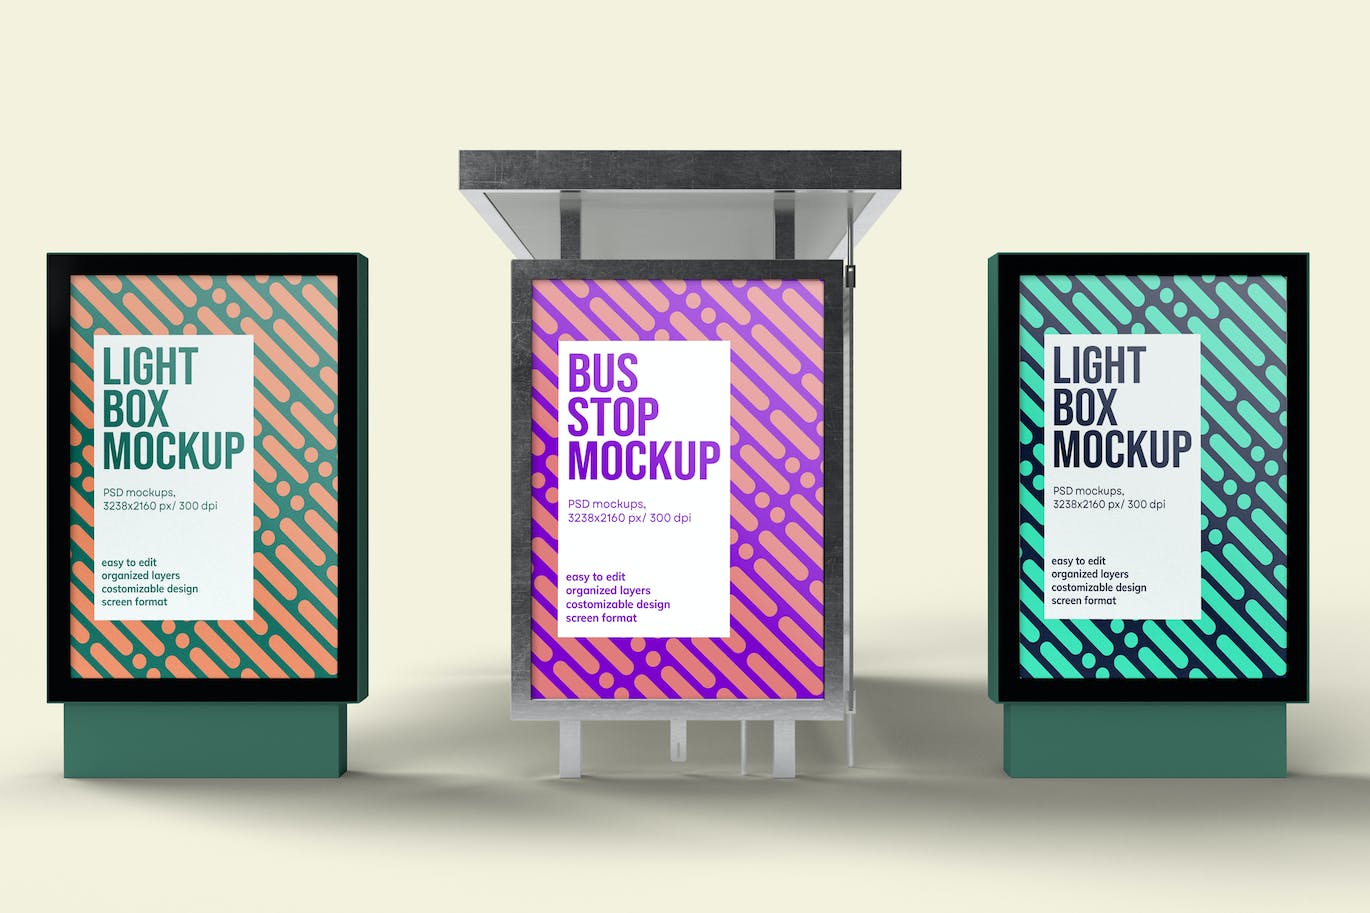 公交巴士站灯箱广告海报展示样机 Bus Stop and Lightbox Mockup 样机素材 第1张